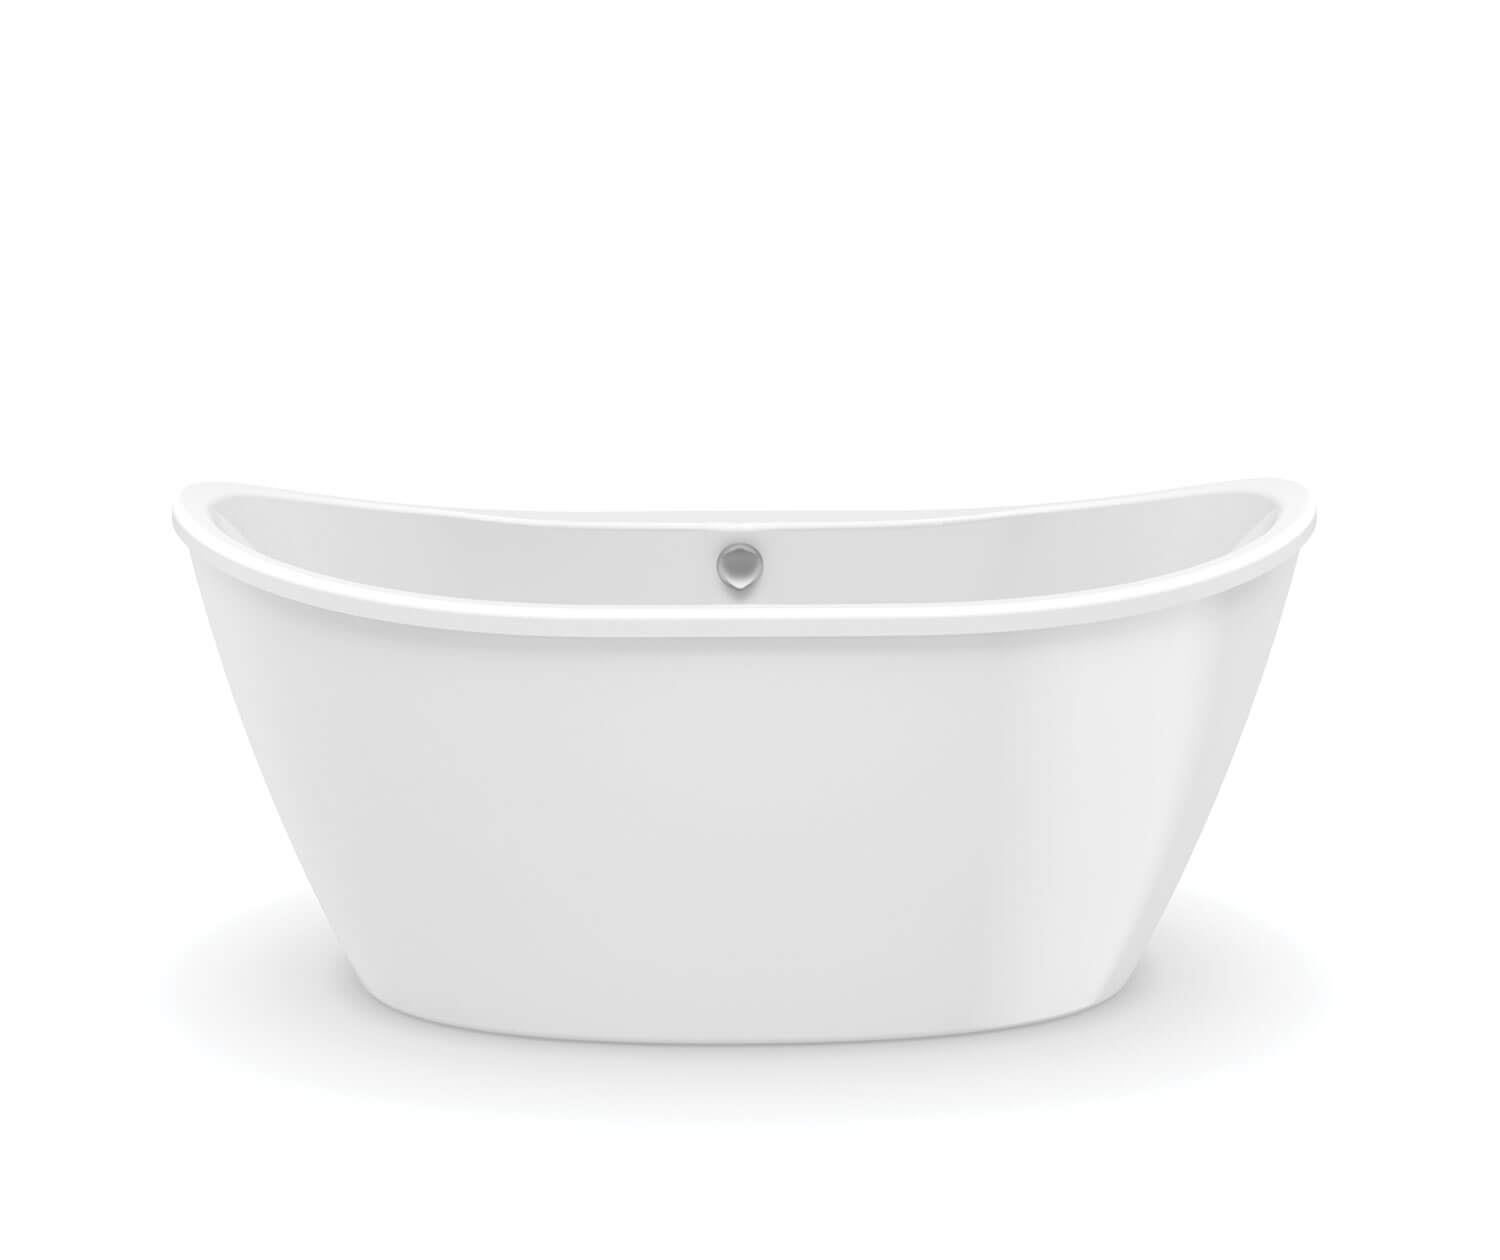 Delsia 60x32x27"Freestanding Bathtub in White w/Center Drain